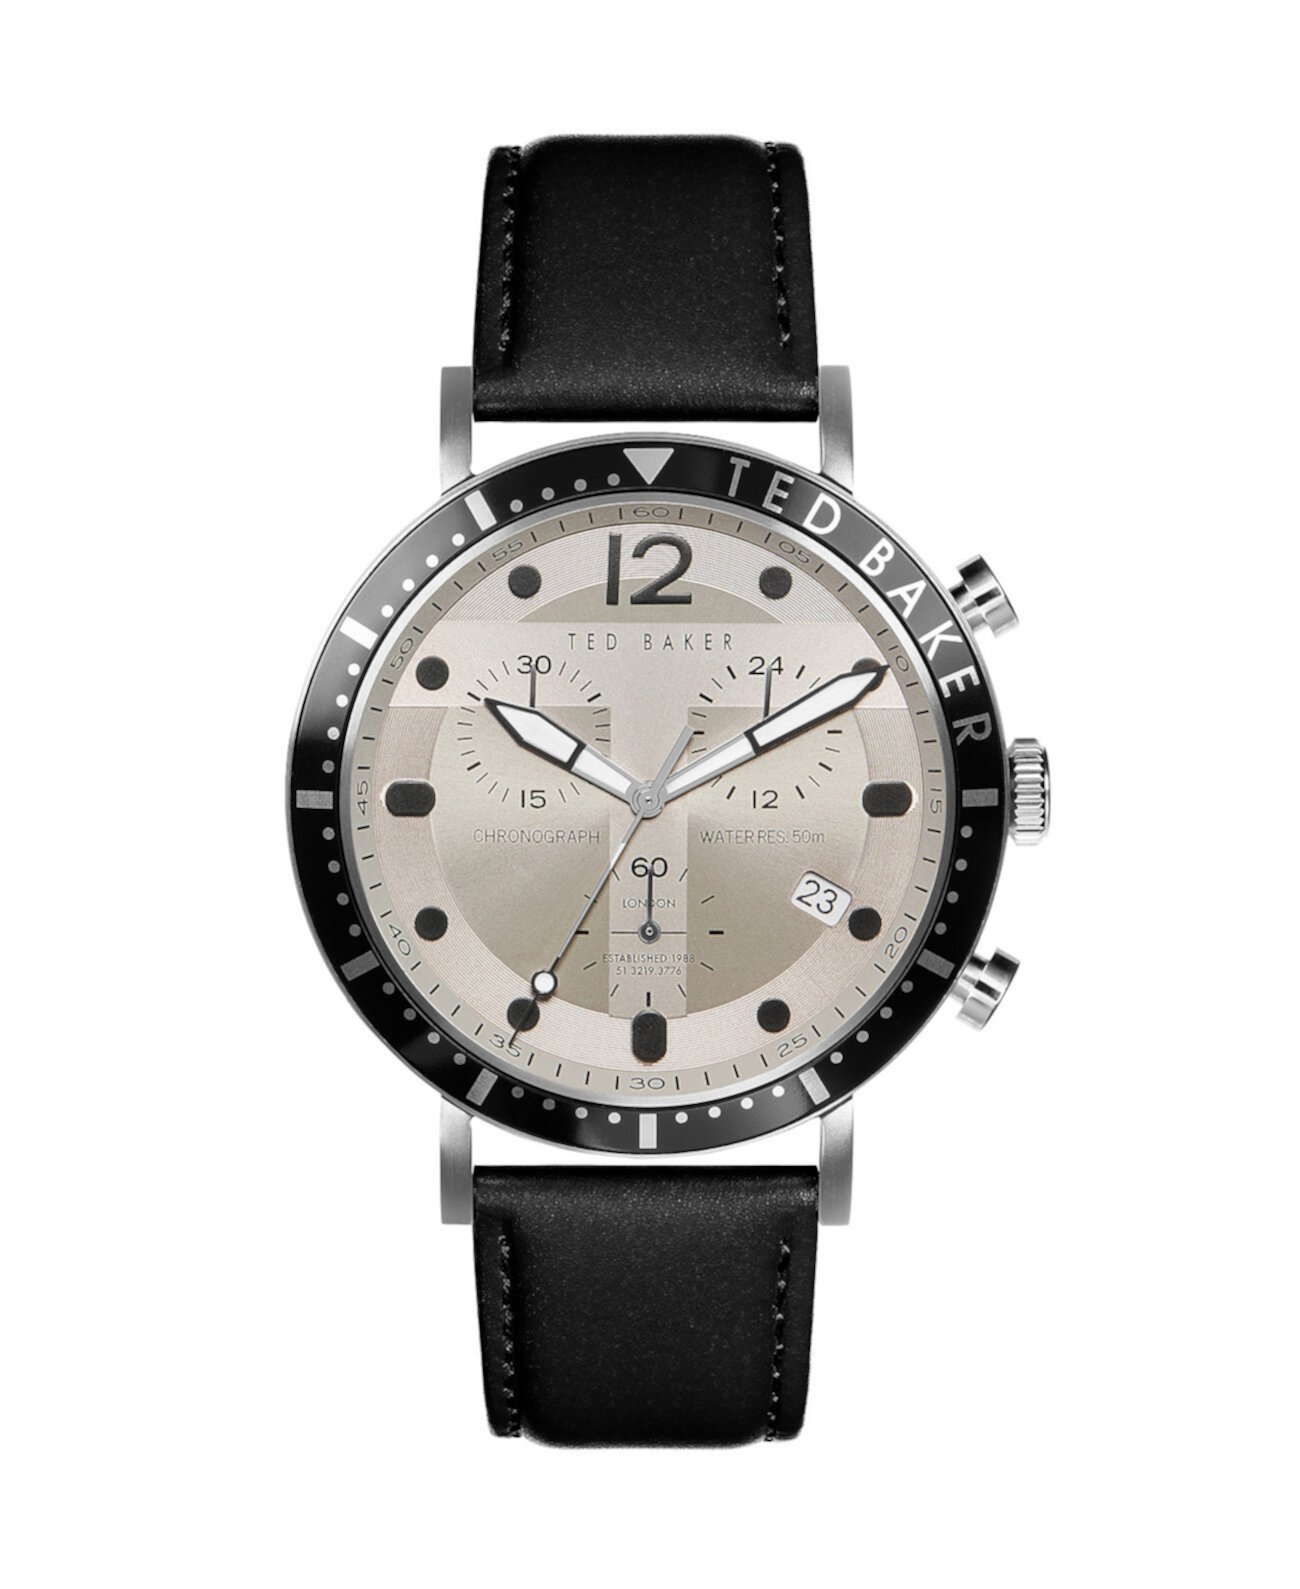 Мужские часы Marteni Chronograph с черным кожаным ремешком 46 мм Ted Baker